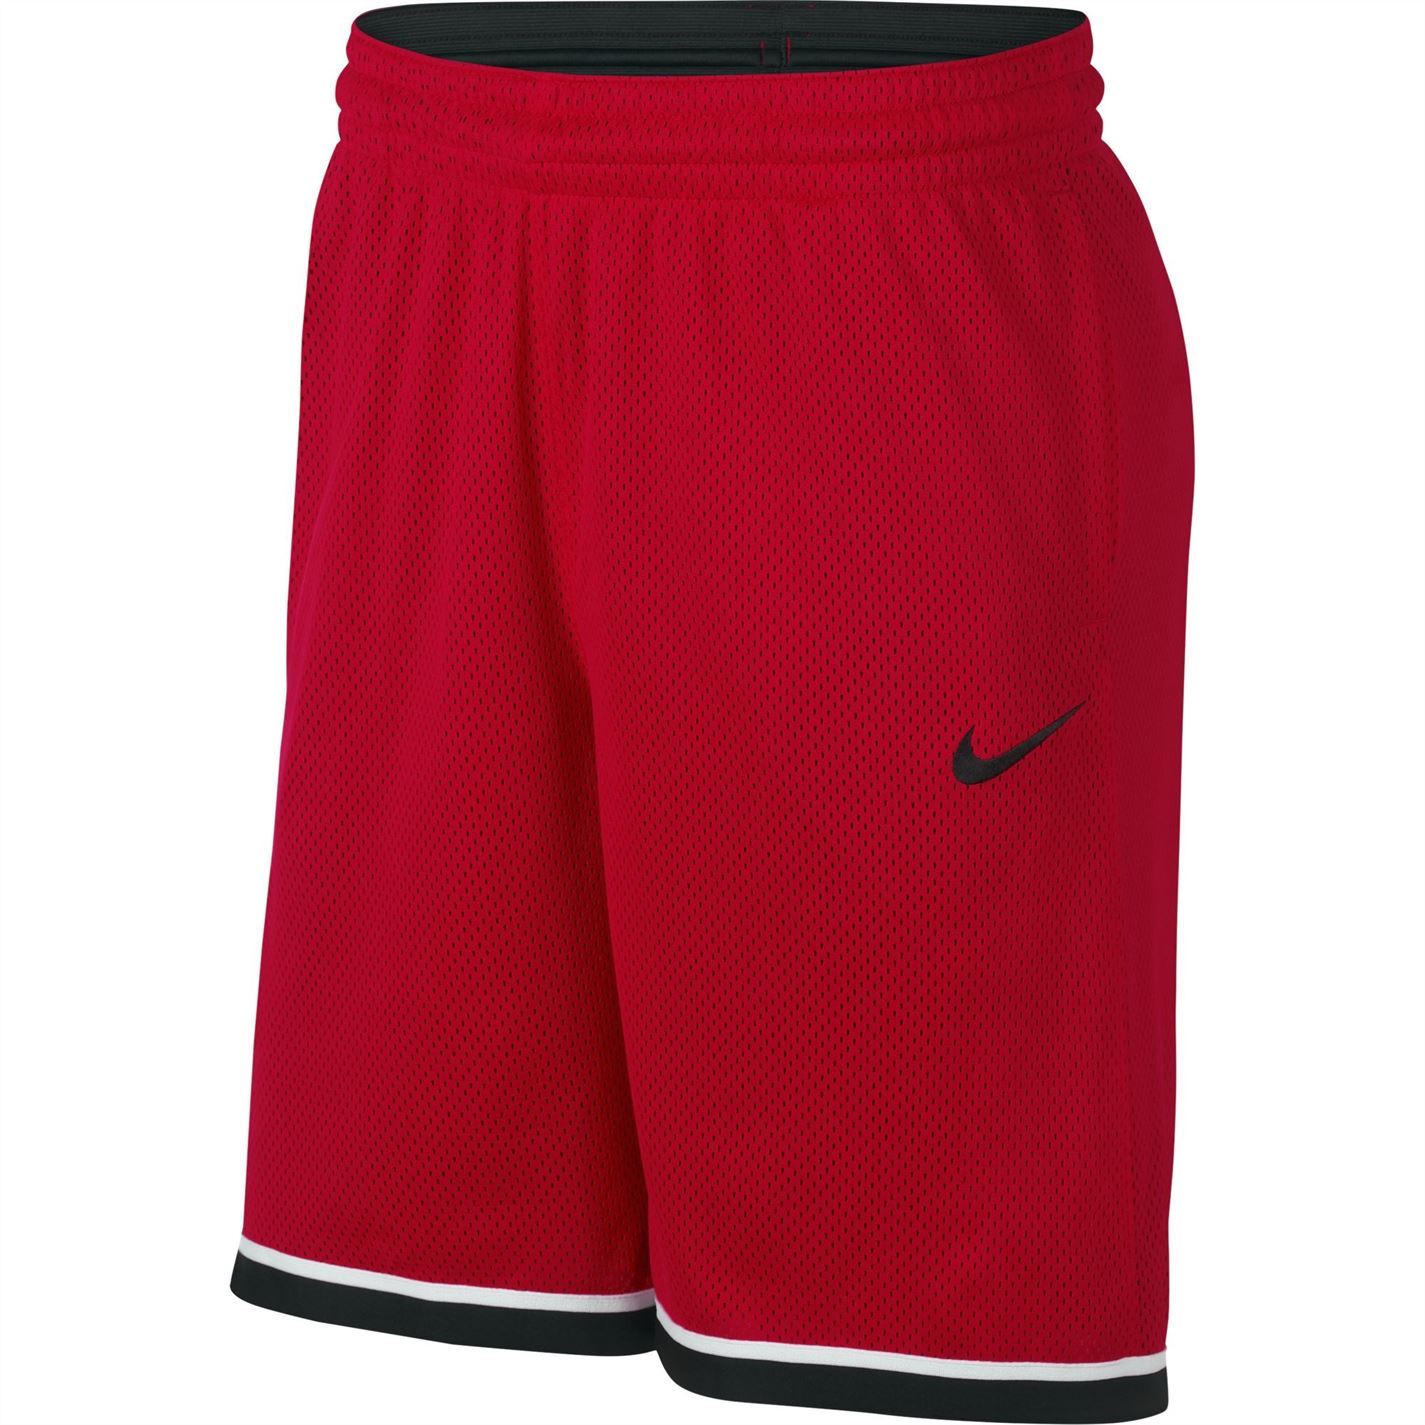 Pantaloni scurti Nike Dri-FIT clasic baschet pentru Barbati rosu